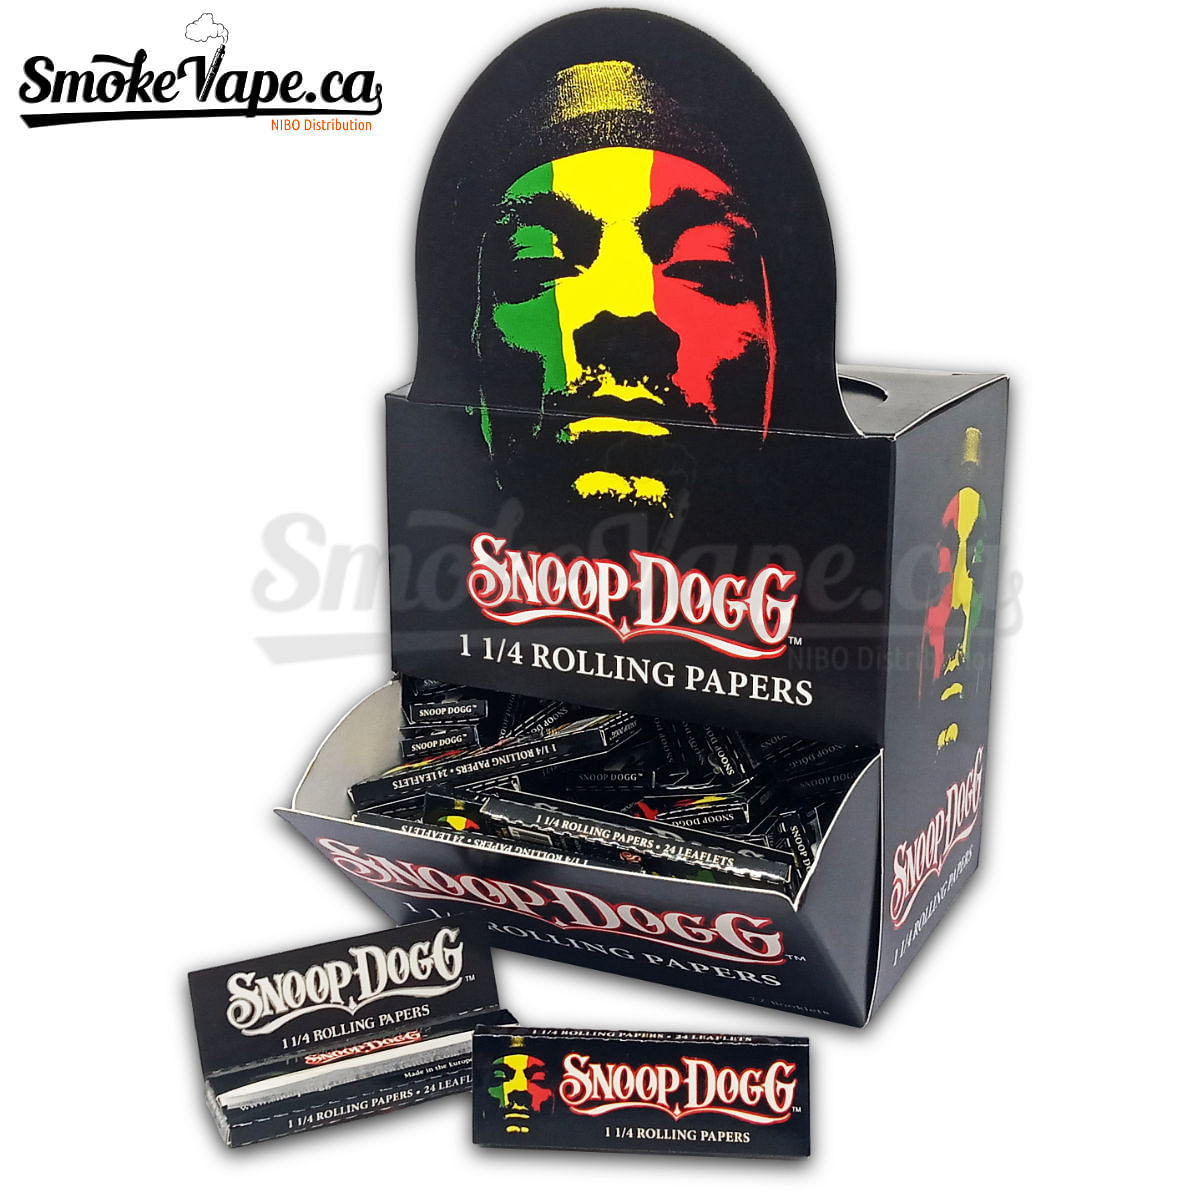 Snoop Dogg - SmokeVape.ca